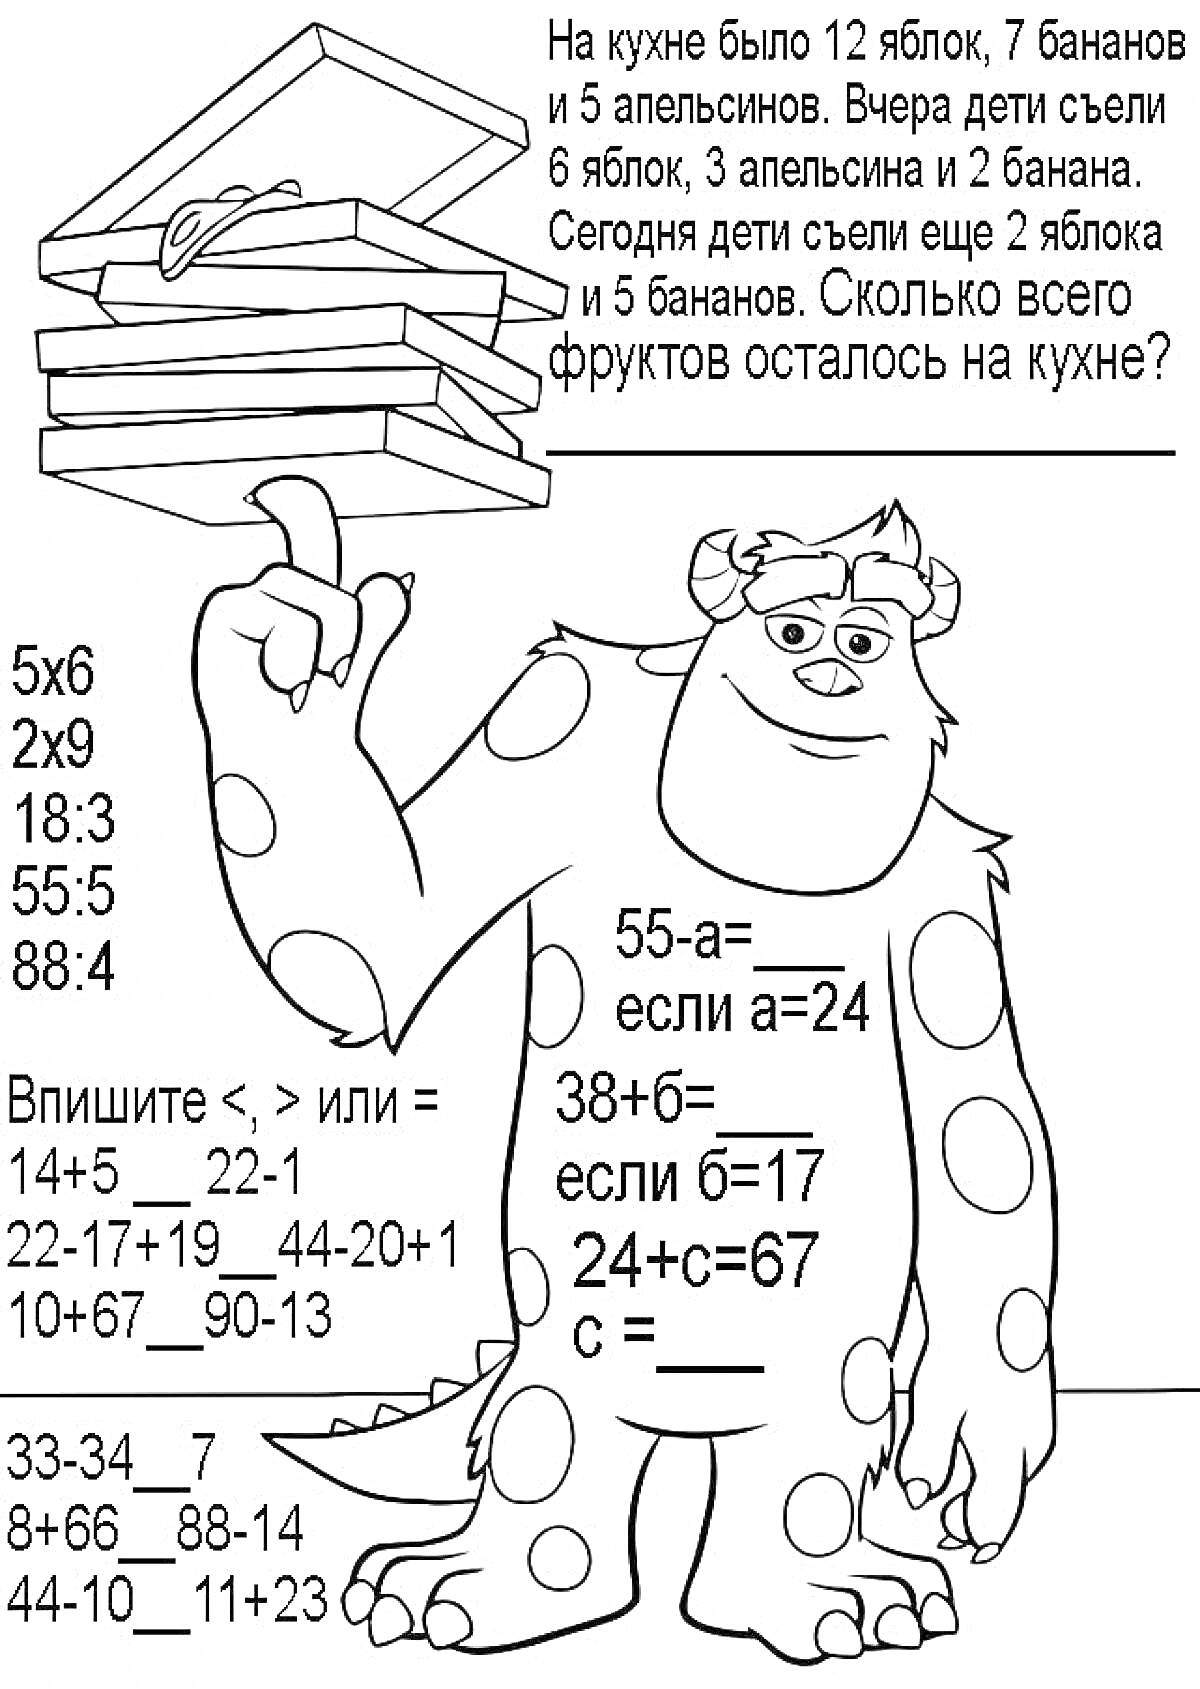 Математическая раскраска для второго класса с монстром и заданиями на арифметику